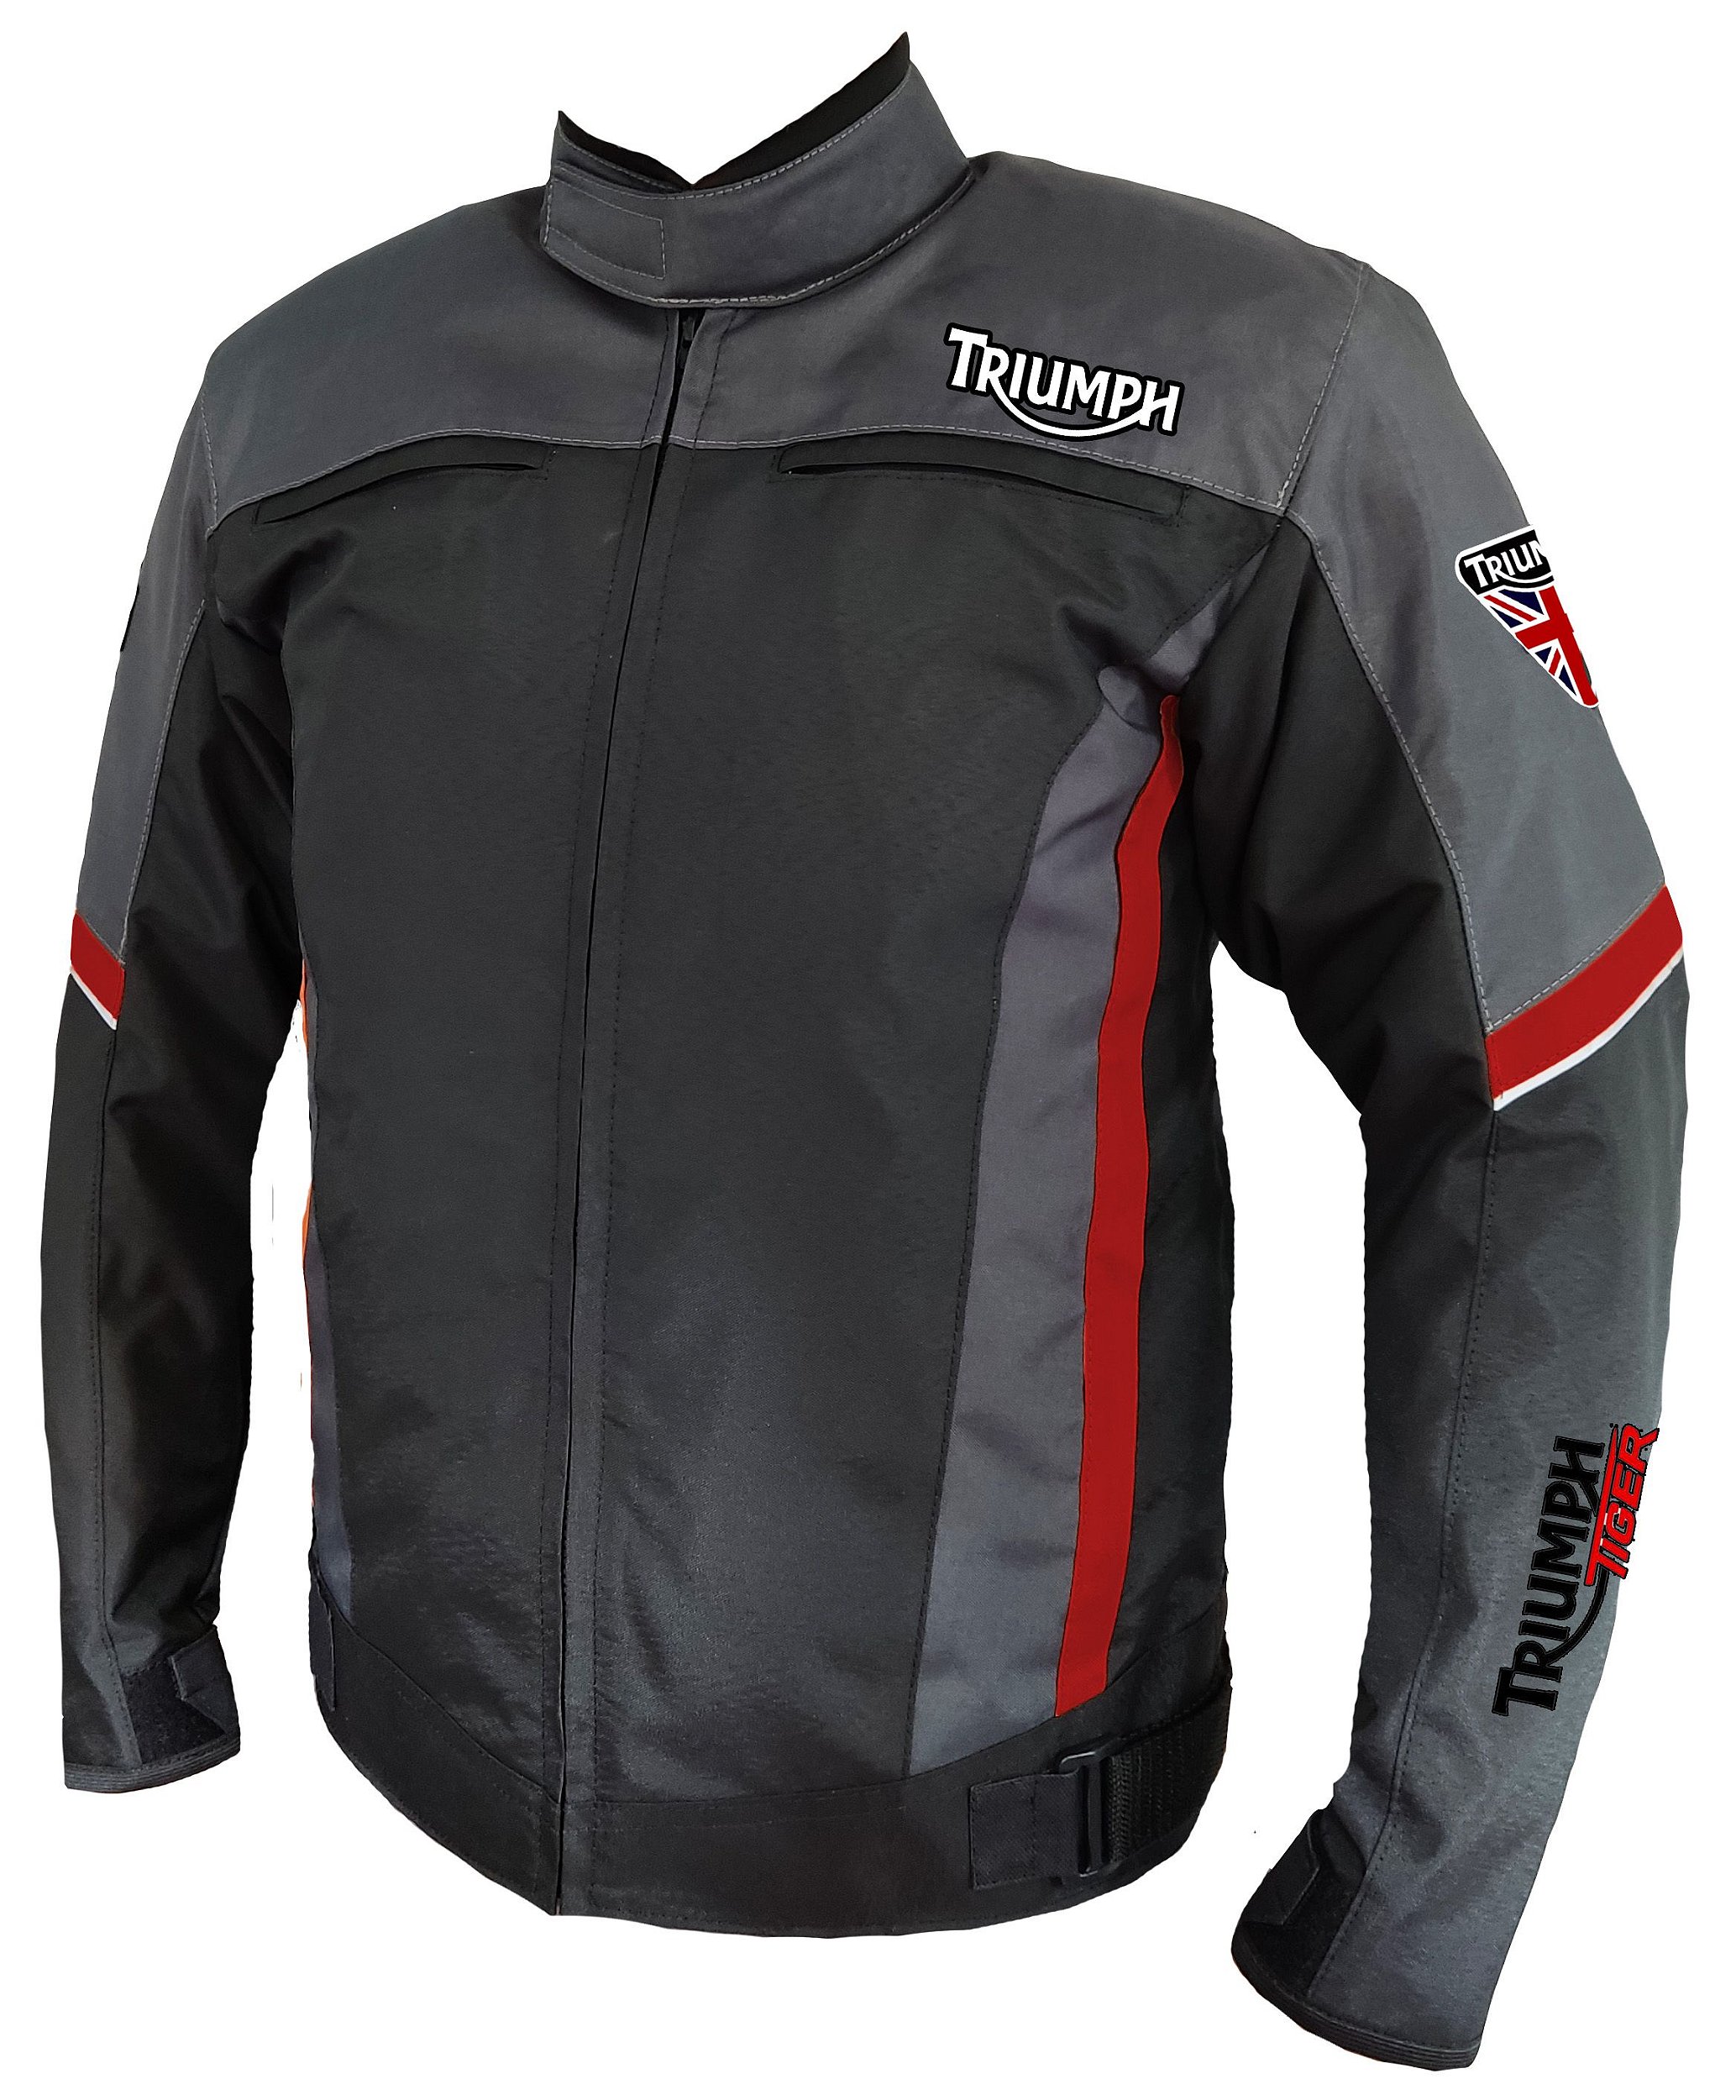 Jaqueta Triumph Tiger Impermeável - Sparta Motors Comércio de Jaquetas,  coletes e Acessórios para Motociclistas